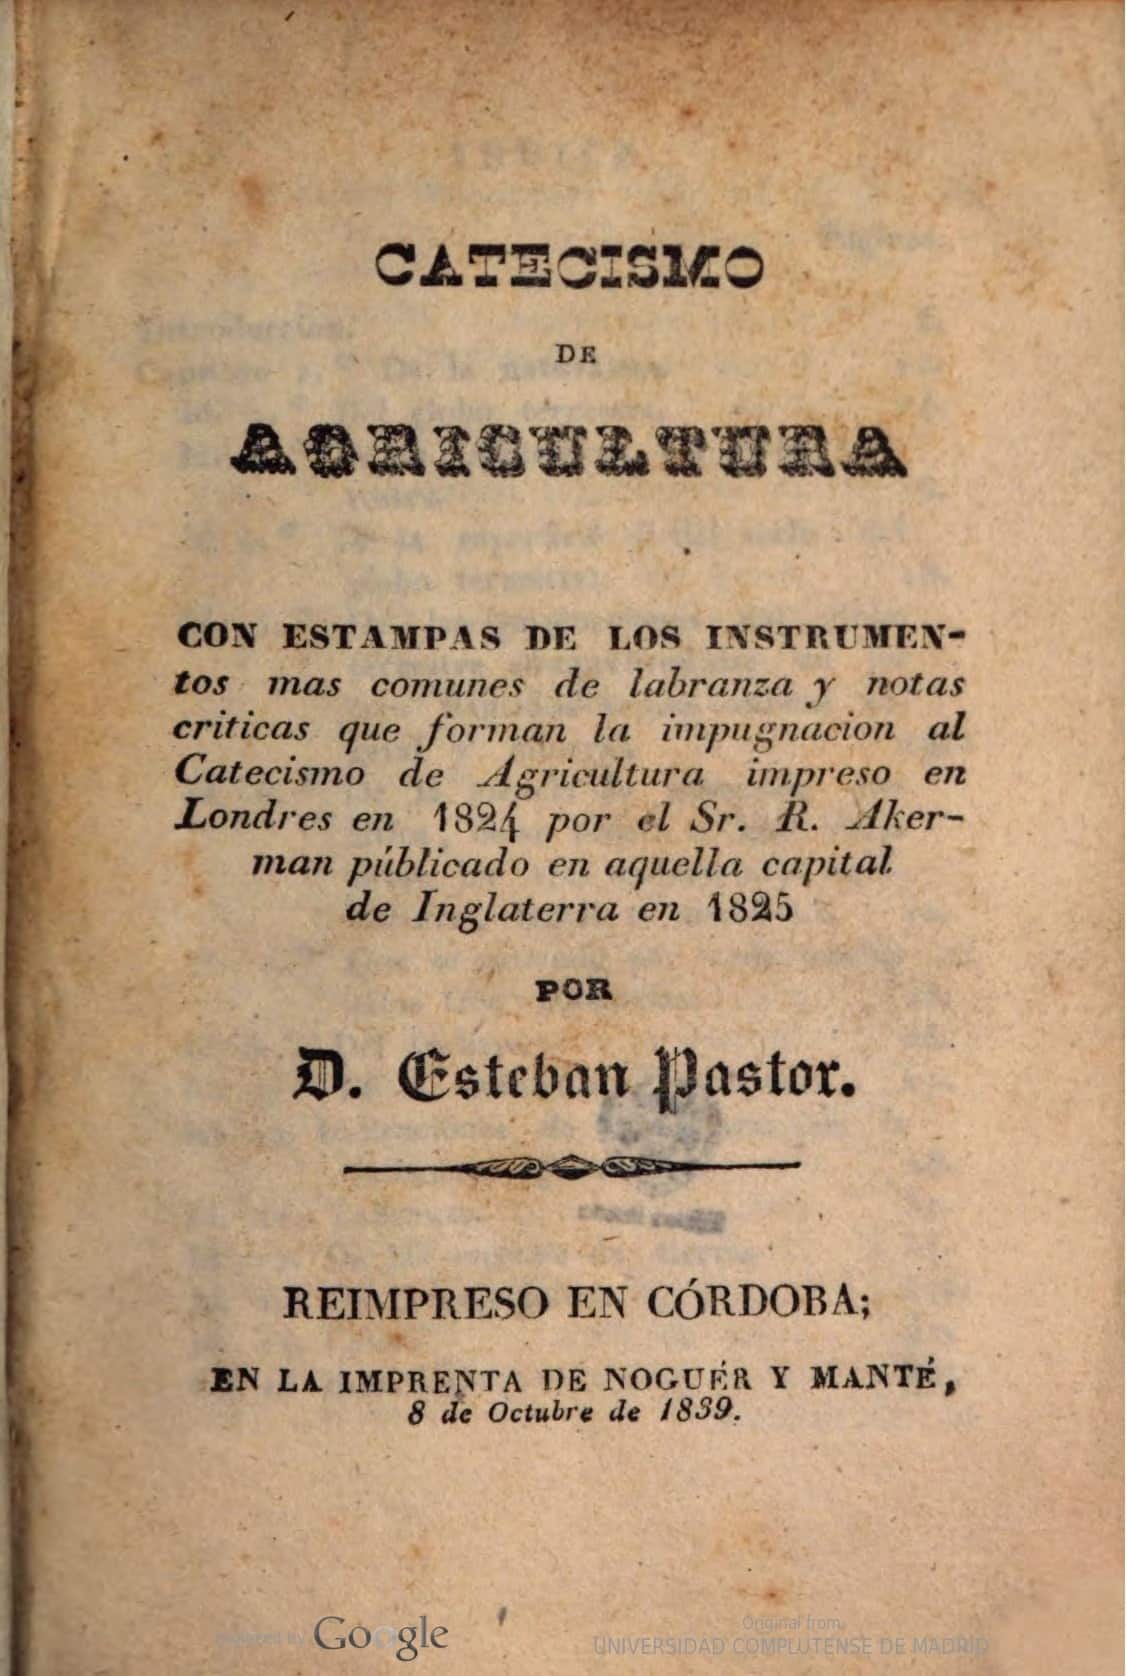 Catecismo de agricultura : con estampas de los instrumentos mas comunes de labranza y notas criticas que forman la impugnacion al catecismo de agricultura impreso en Londres en 1824 por R. Akerman